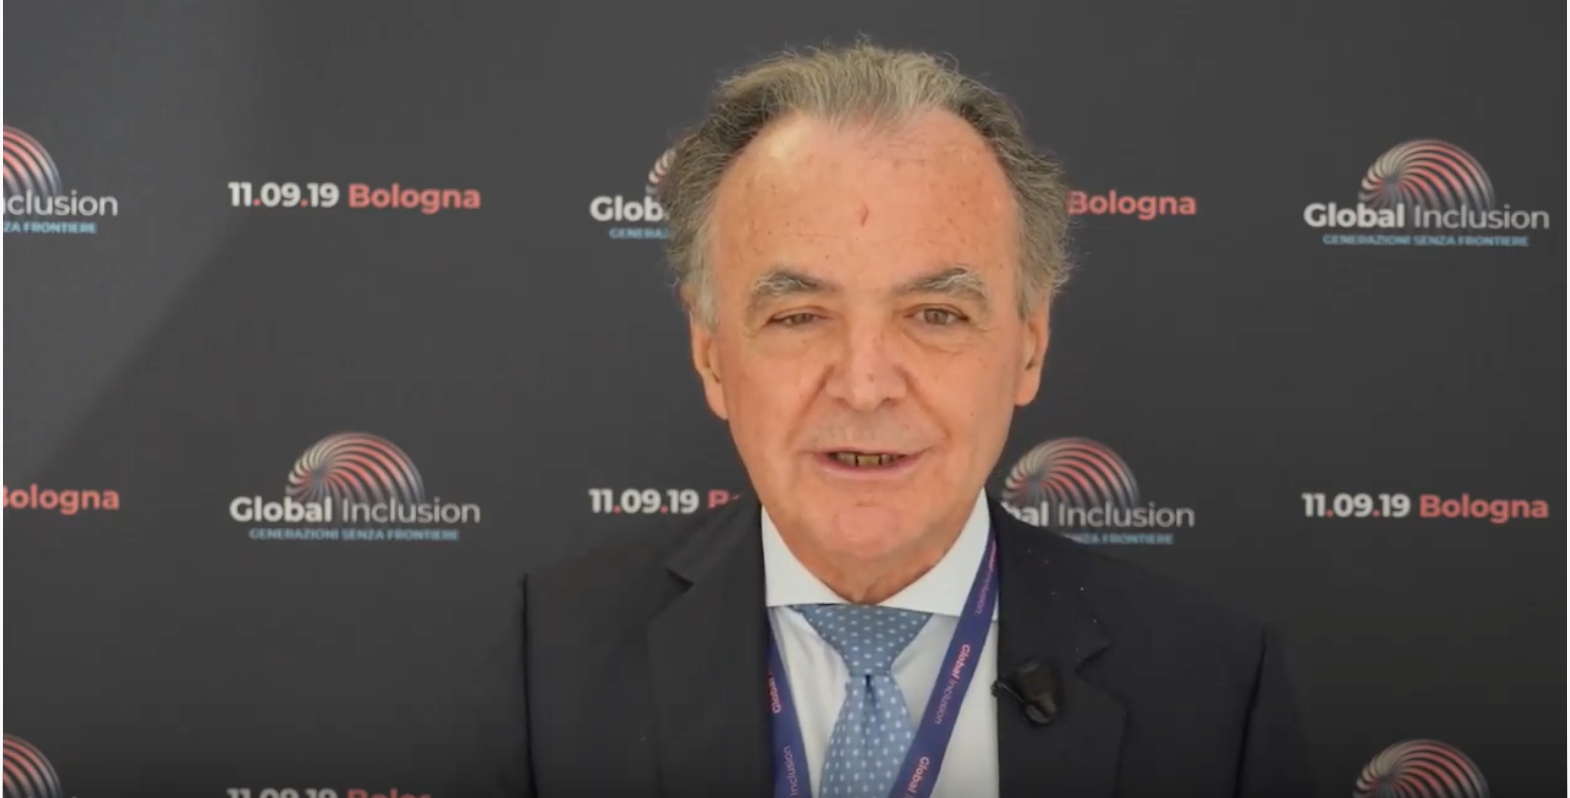 [video] Luigi Bobba, Presidente del Comitato Global Inclusion Art. 3